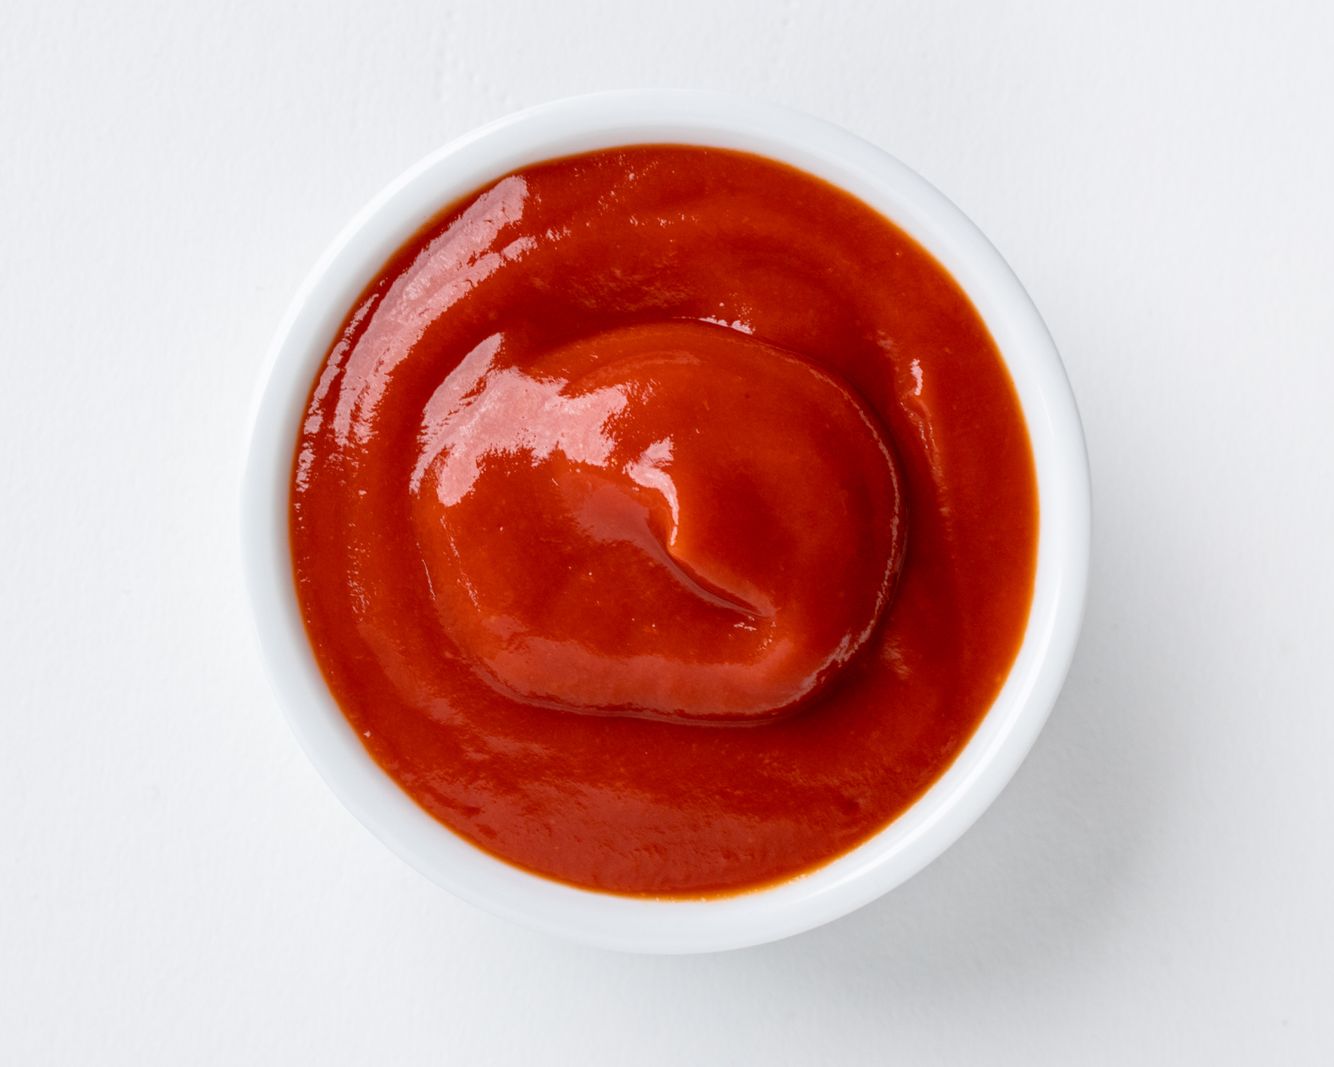 Vilgain Ketchup cu conținut scăzut de zahăr